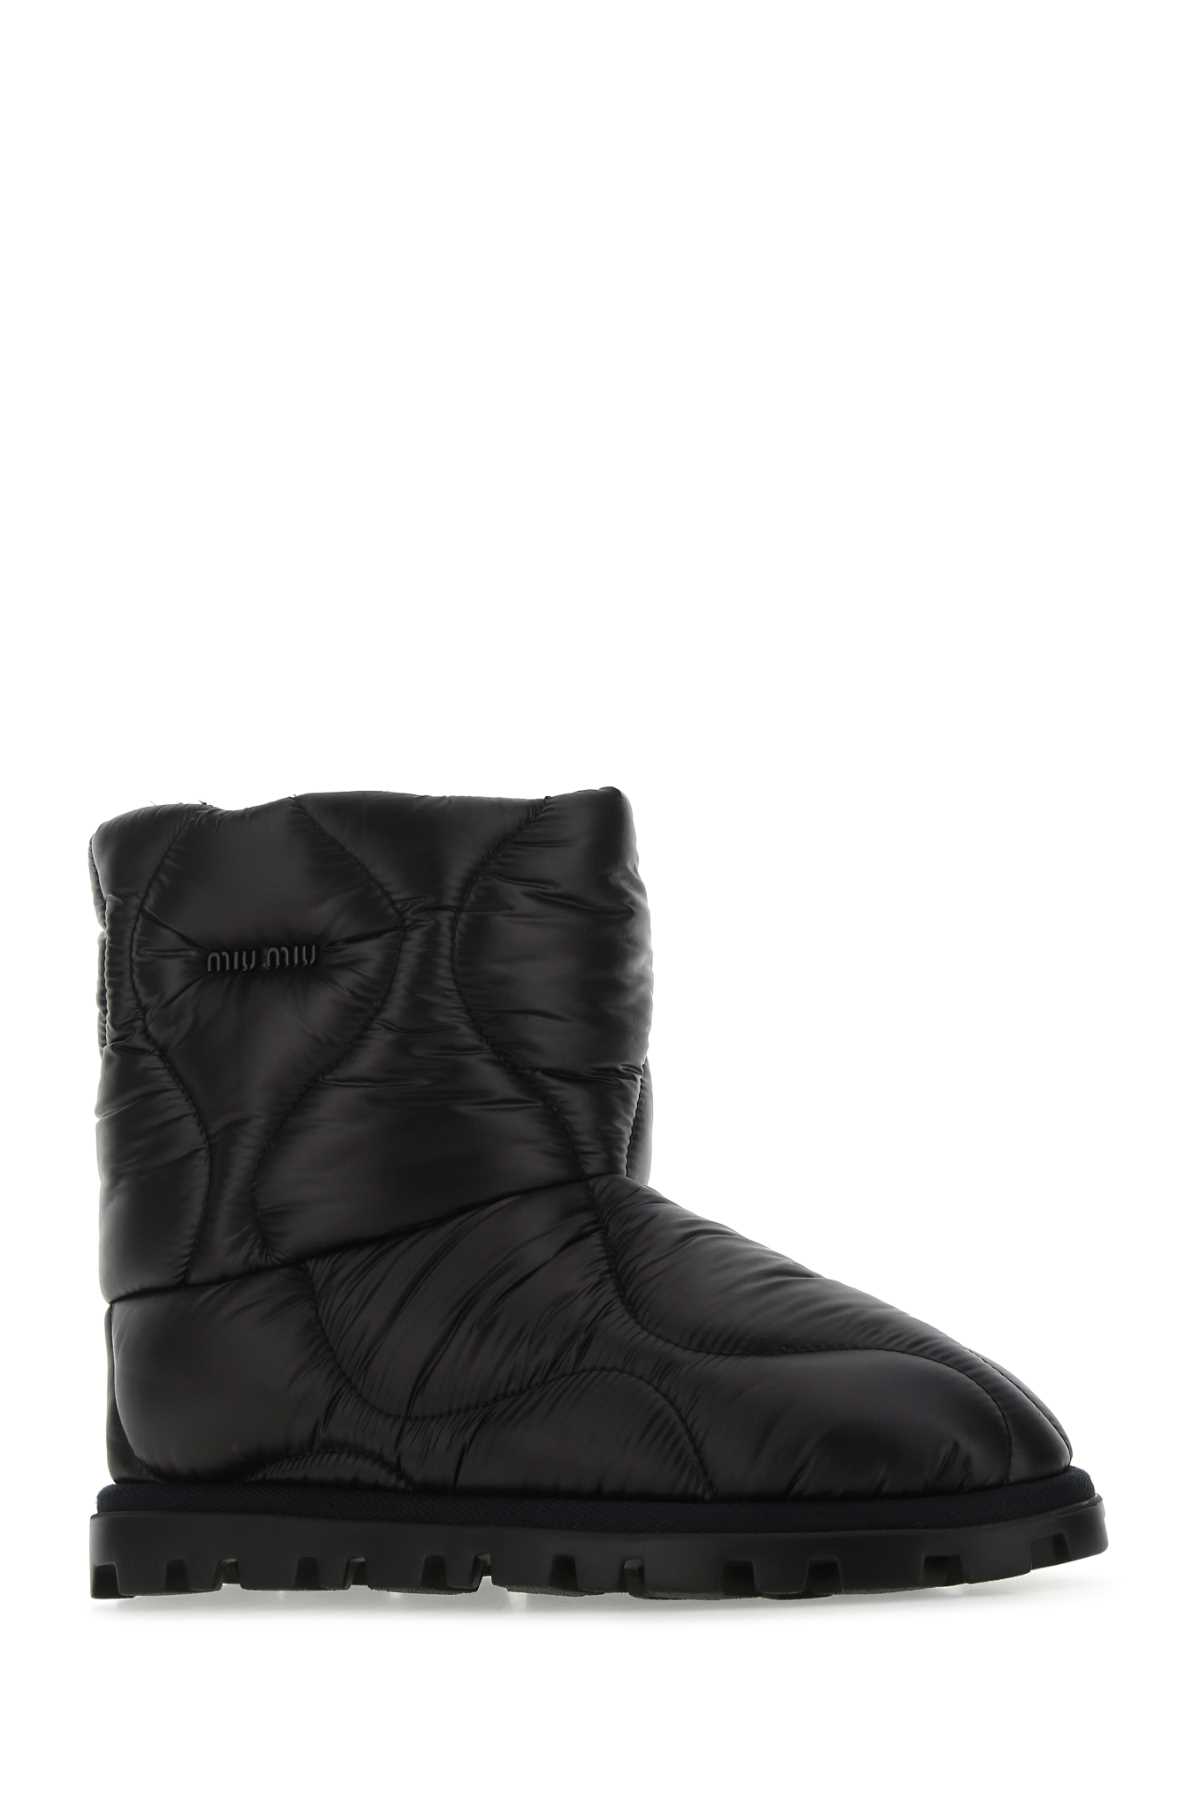 Shop Miu Miu Black Nylon Ankle Boots In Nero